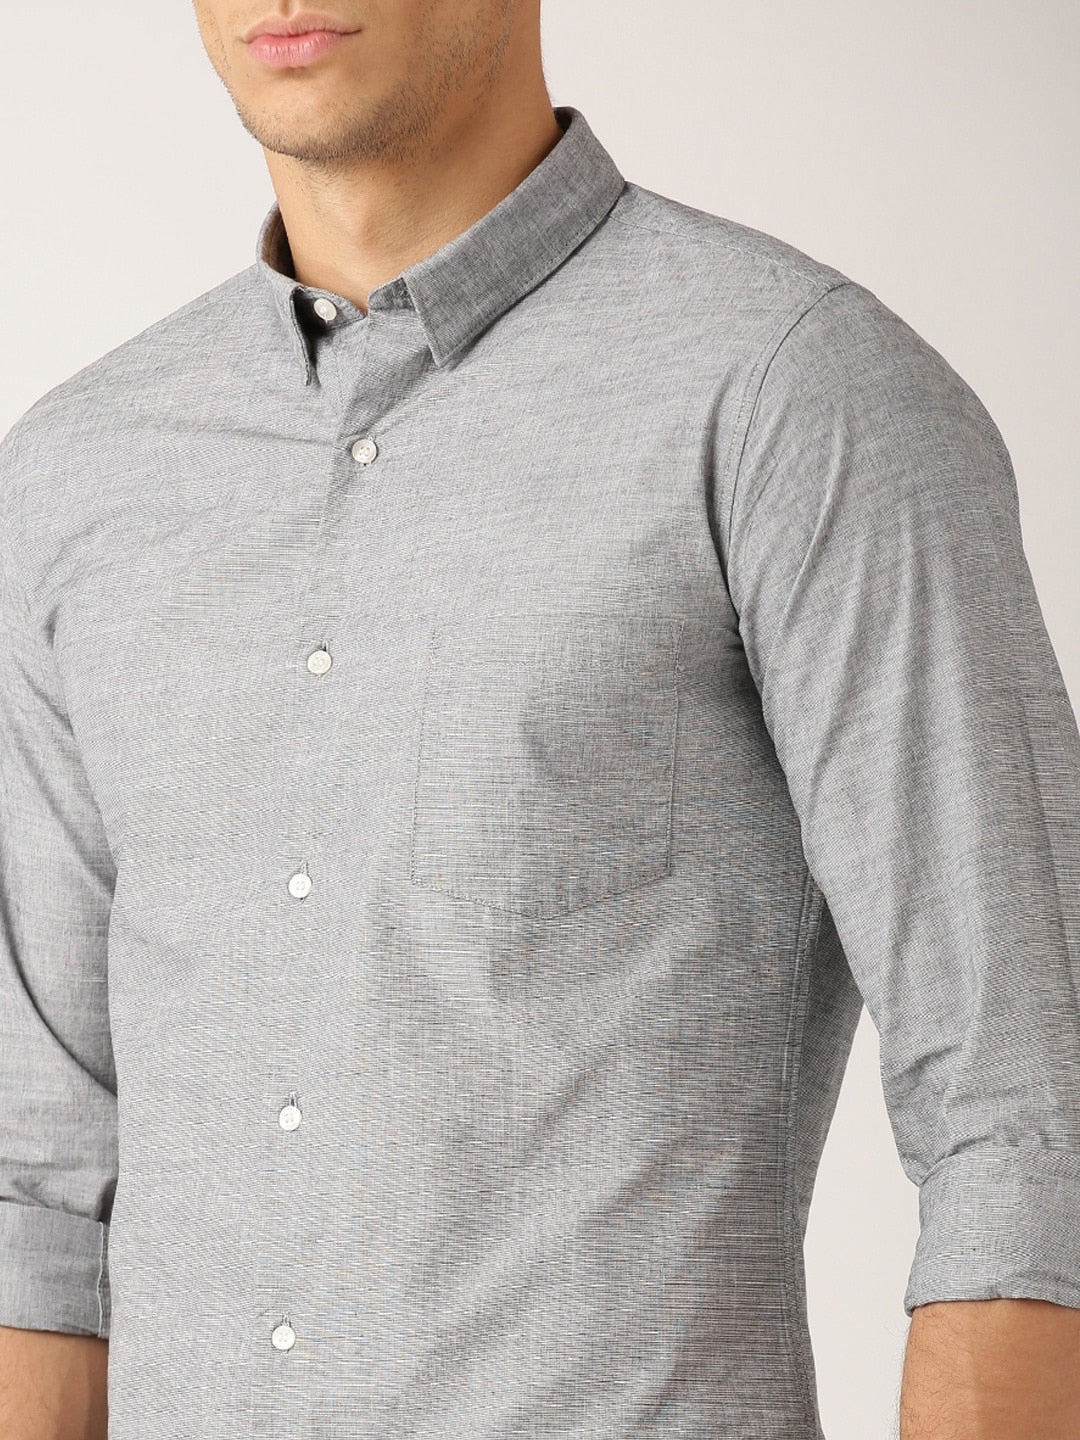 Men's Light Grey Formal Shirt